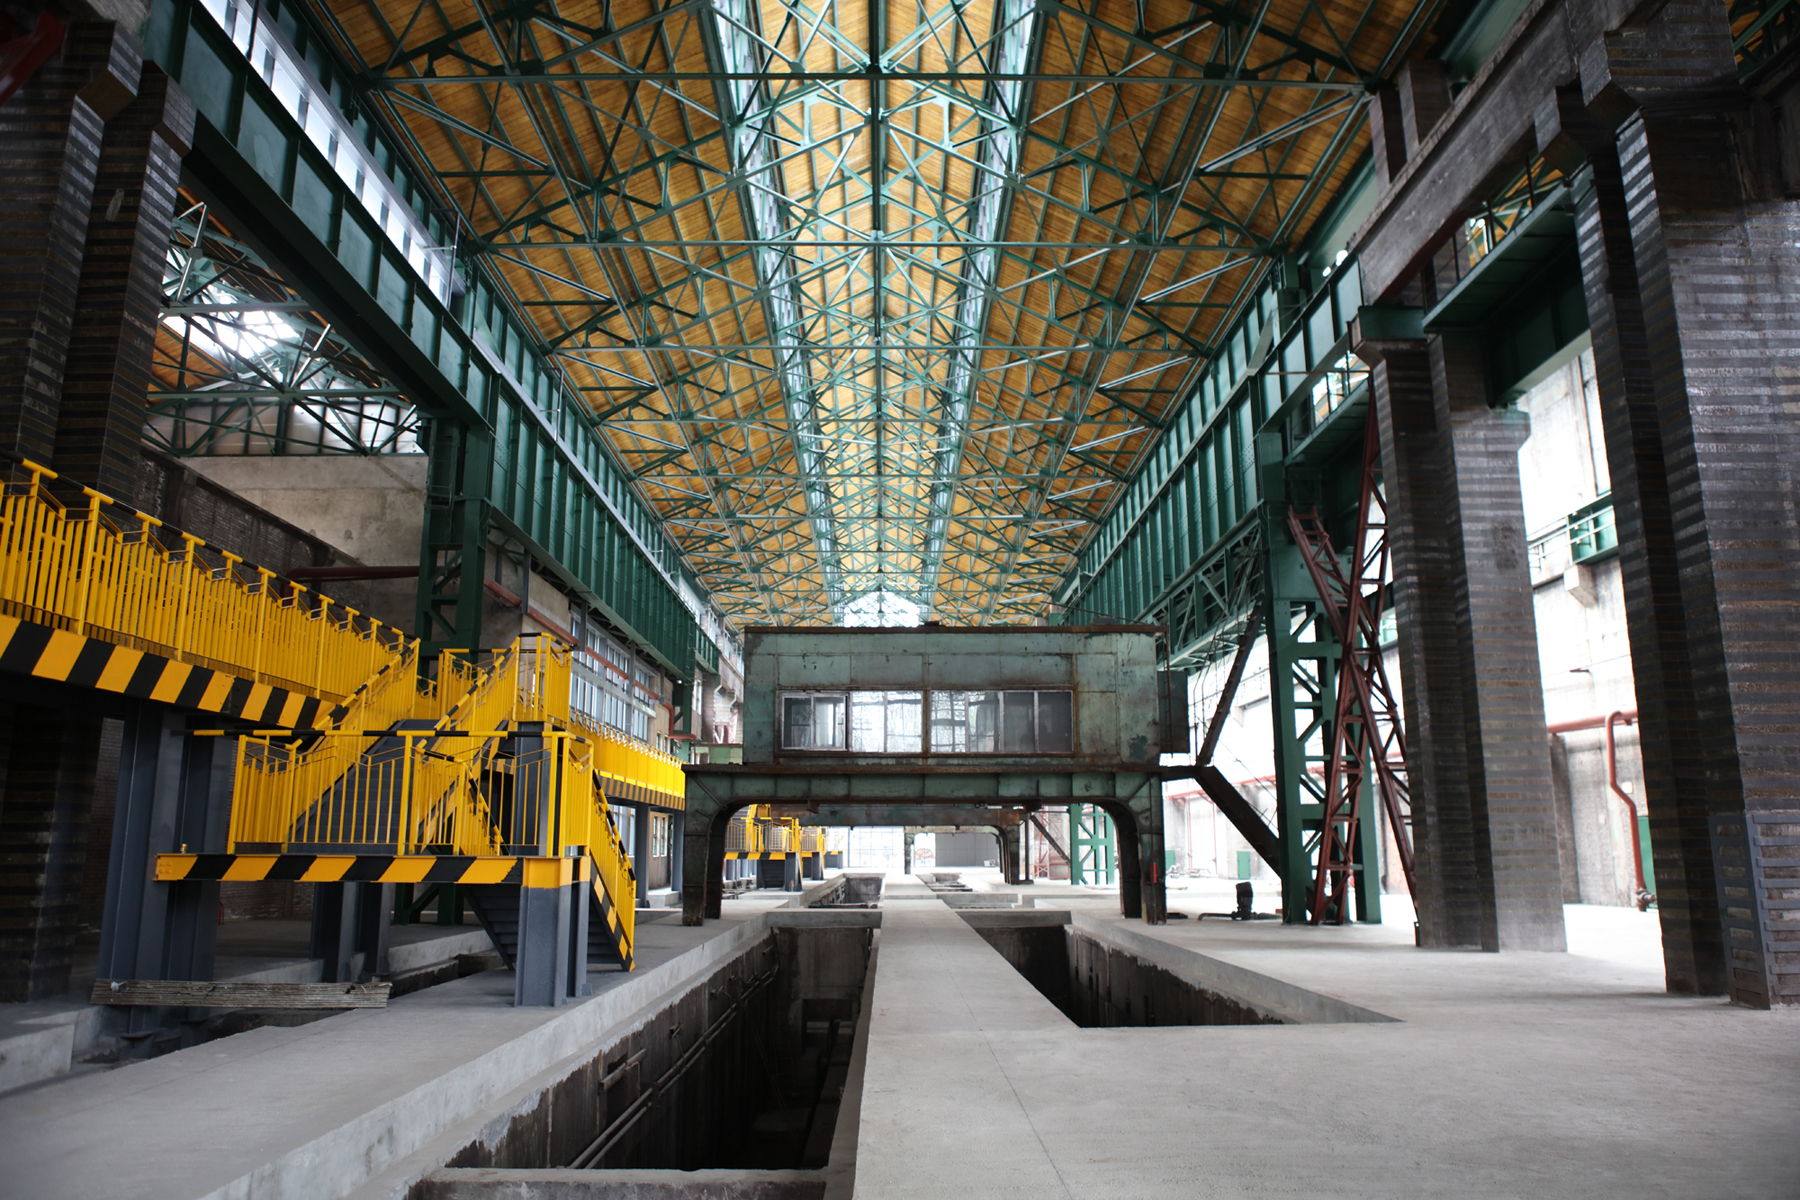 重庆大渡口:全国重点文物保护单位钢迁会旧址 传承中国钢铁工业血脉